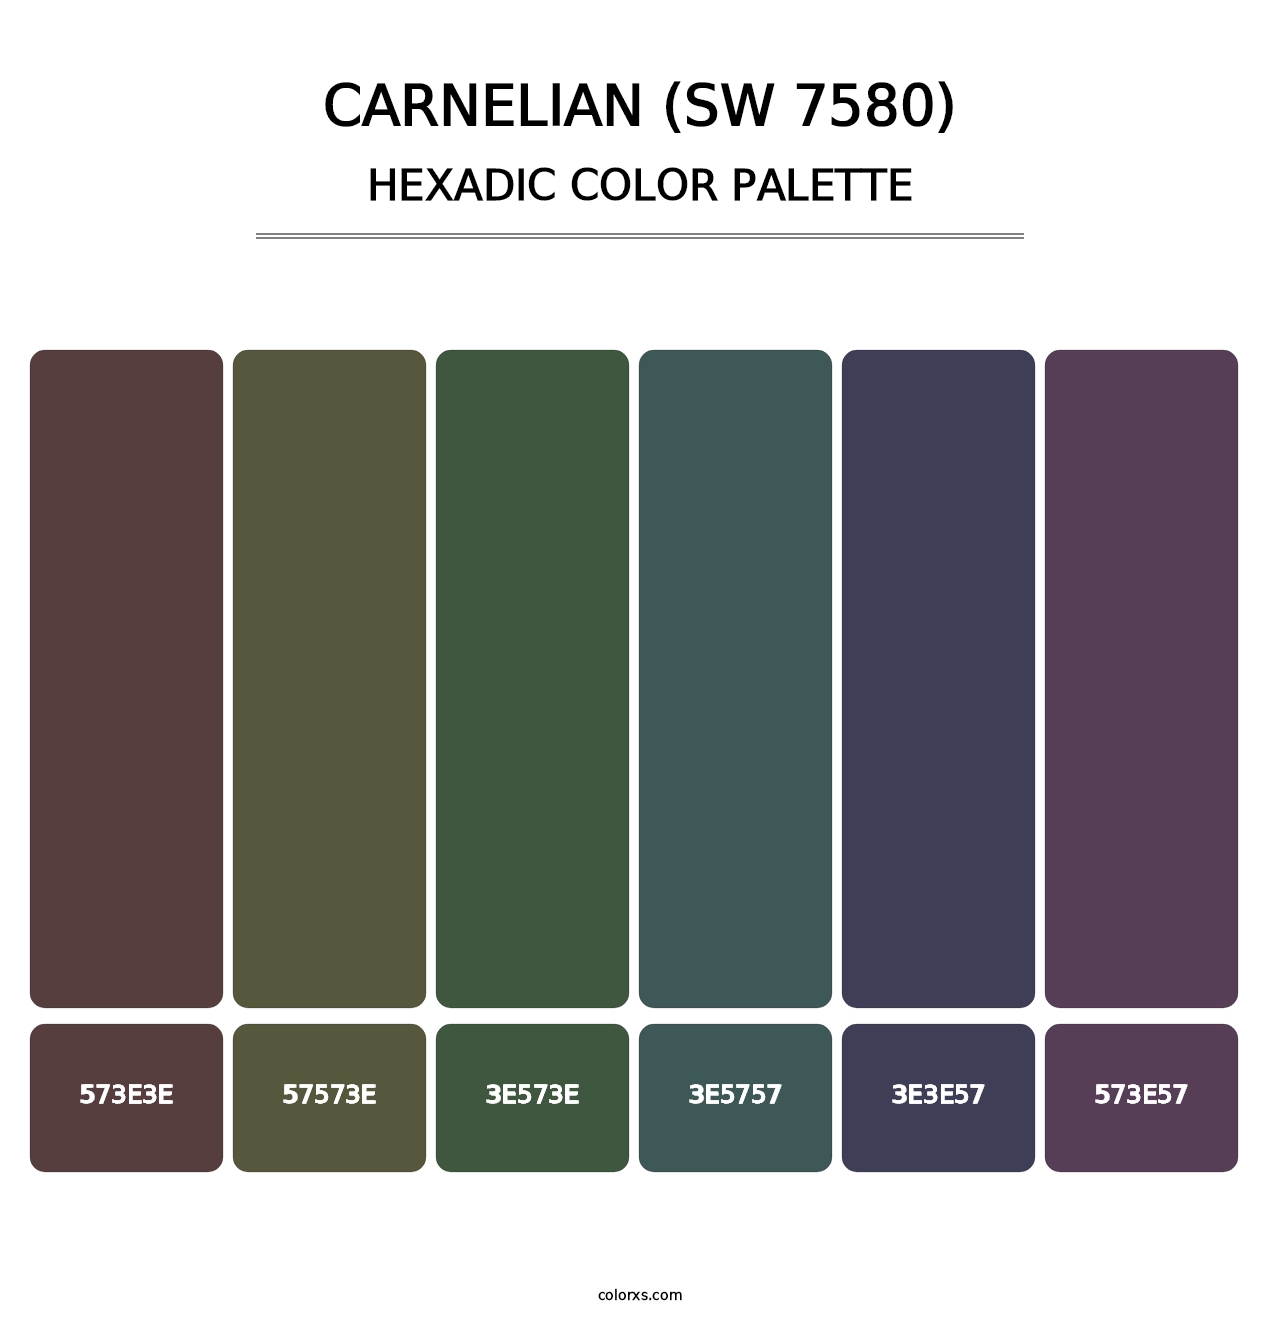 Carnelian (SW 7580) - Hexadic Color Palette